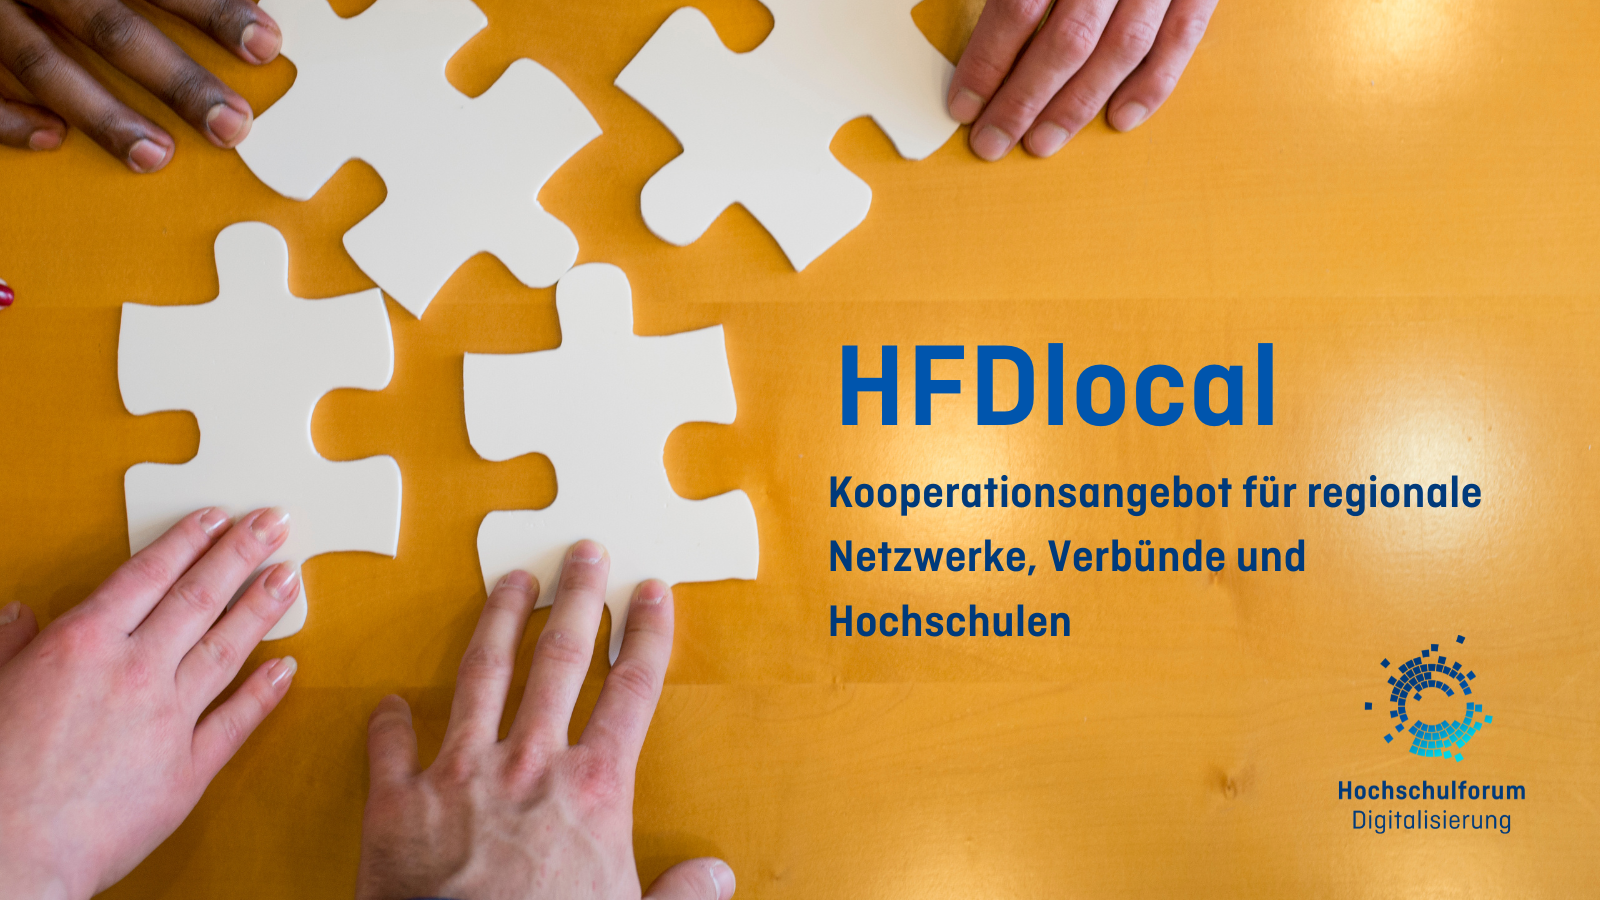 Im Hintergrundbild werden vier große weiße Puzzleteile von vier verschiedenen Händen angelegt. Titel: "HFDlocal: Kooperationsangebot für regionale Netzwerke, Verbünde und Hochschulen". Logo rechts unten: Hochschulforum Digitalisierung.